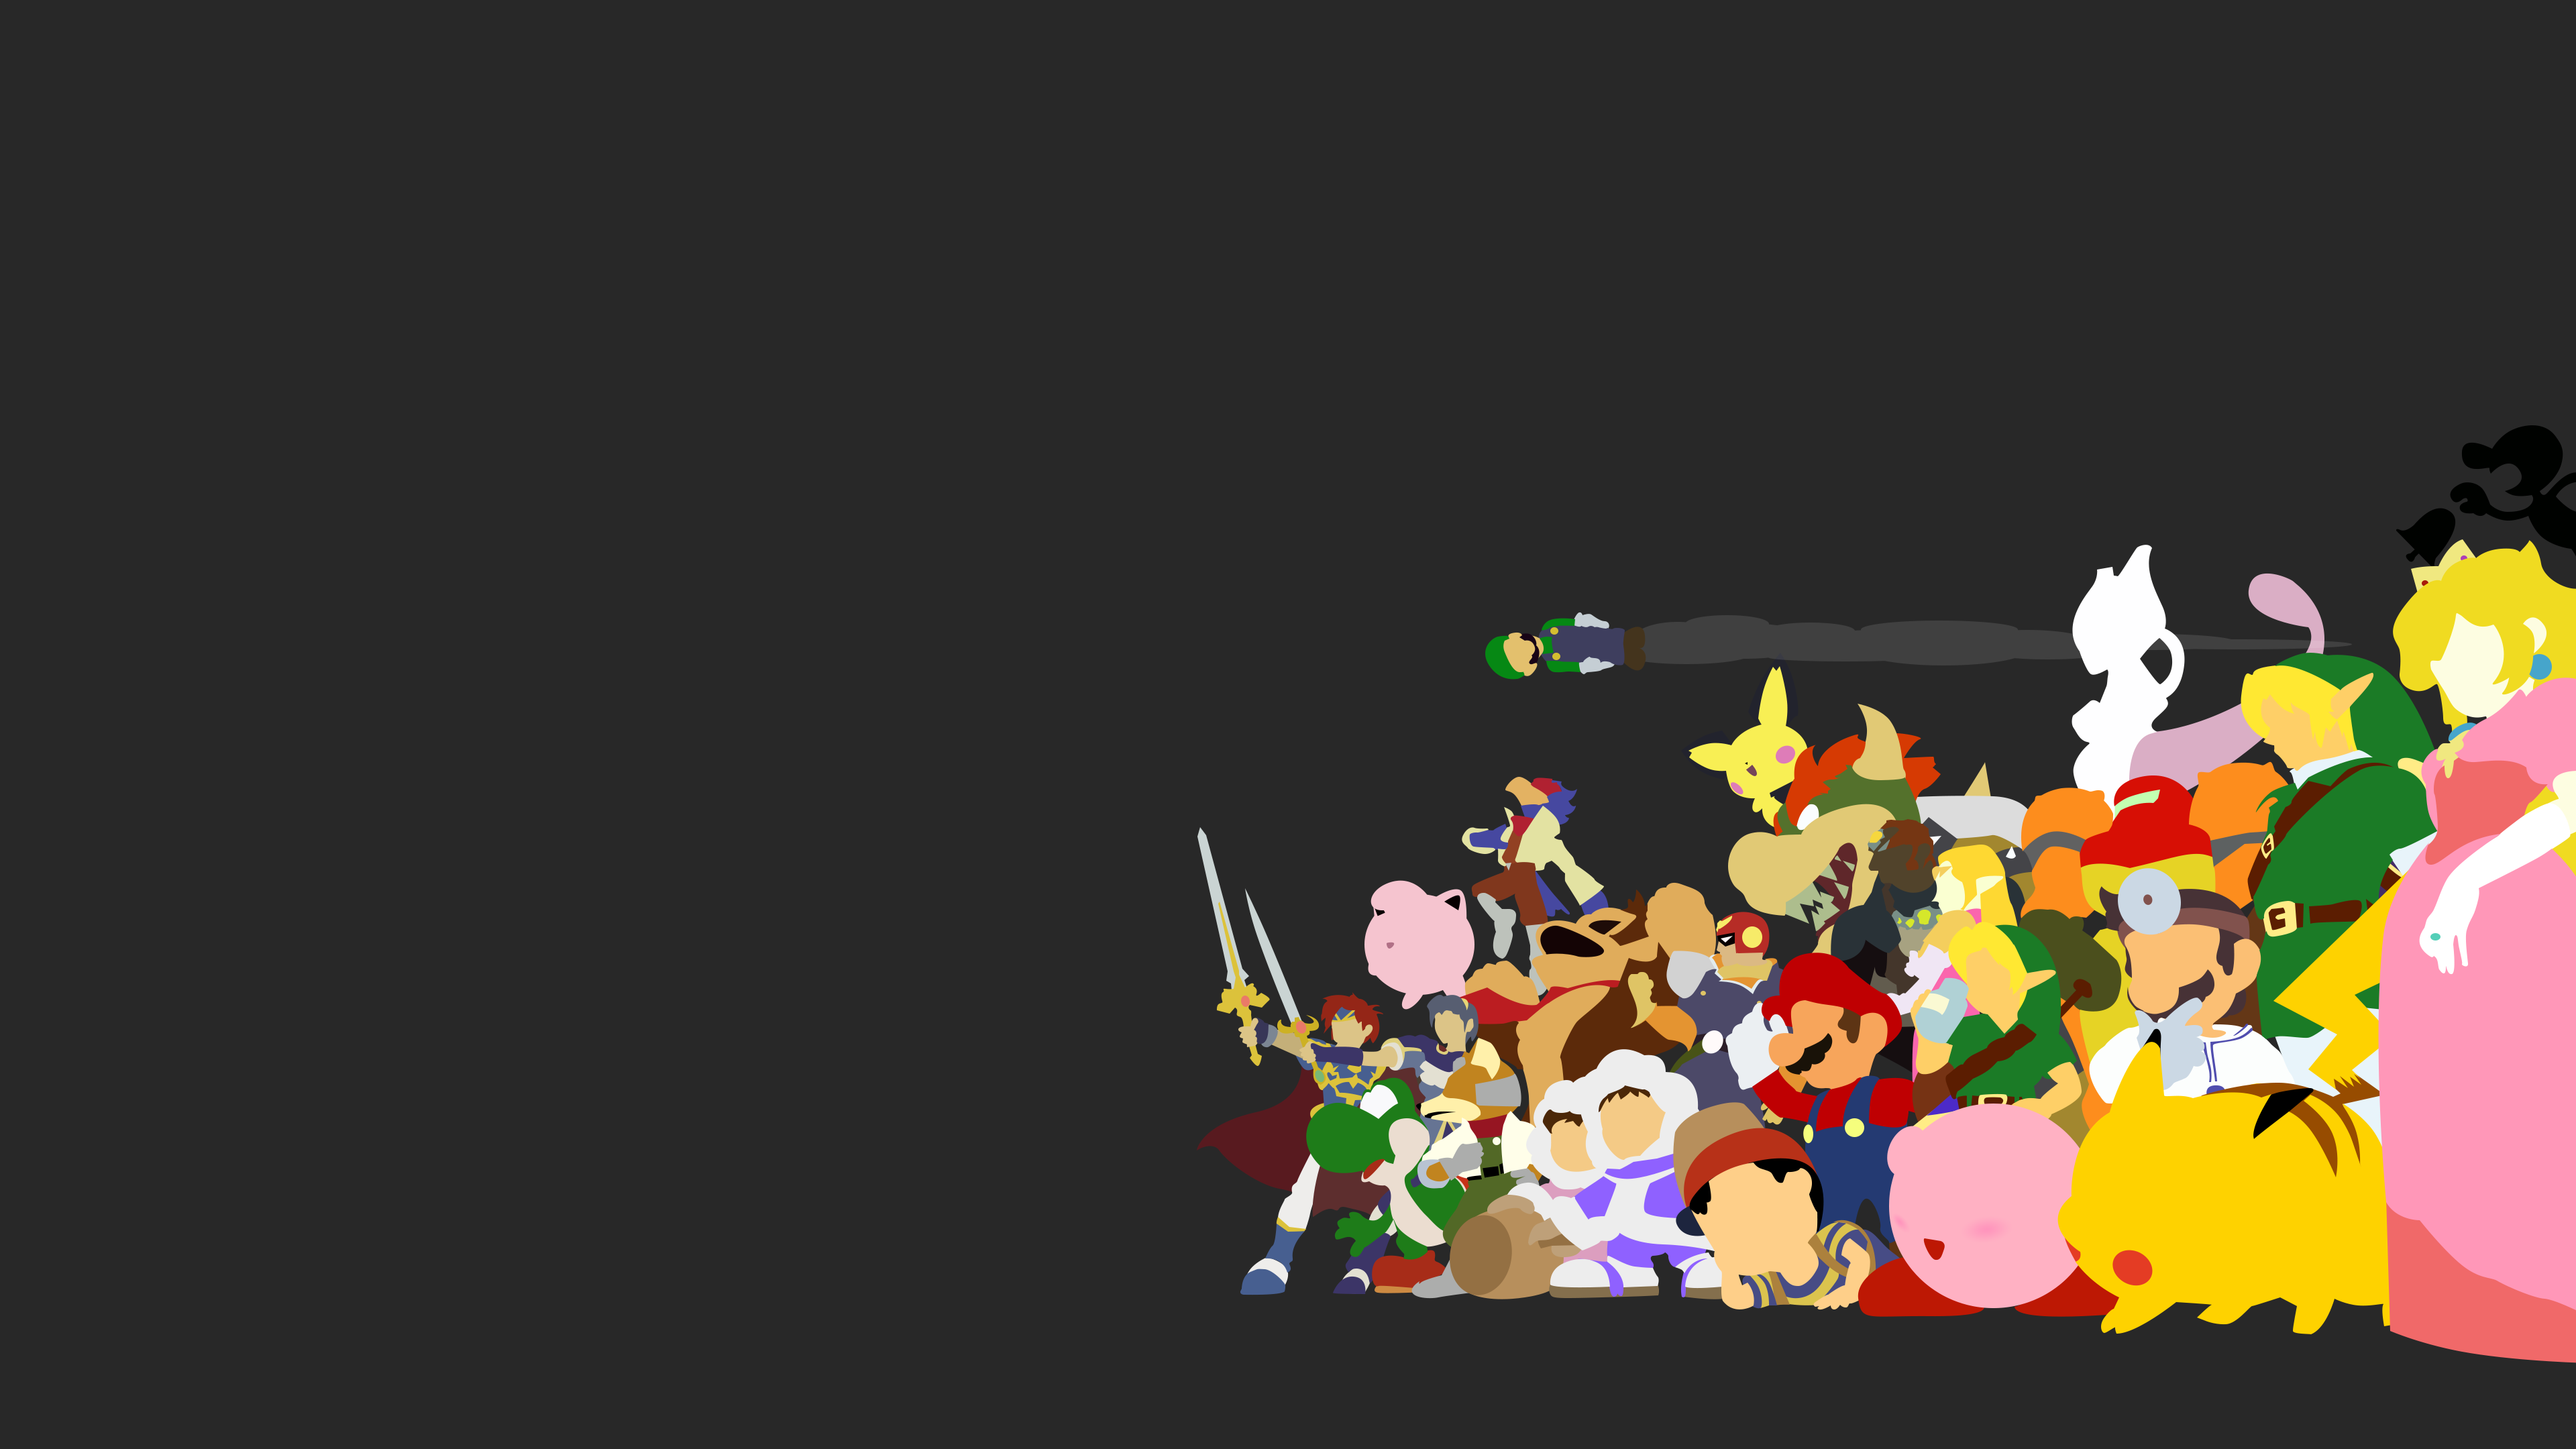 Super Smash Bros Wallpaper HD